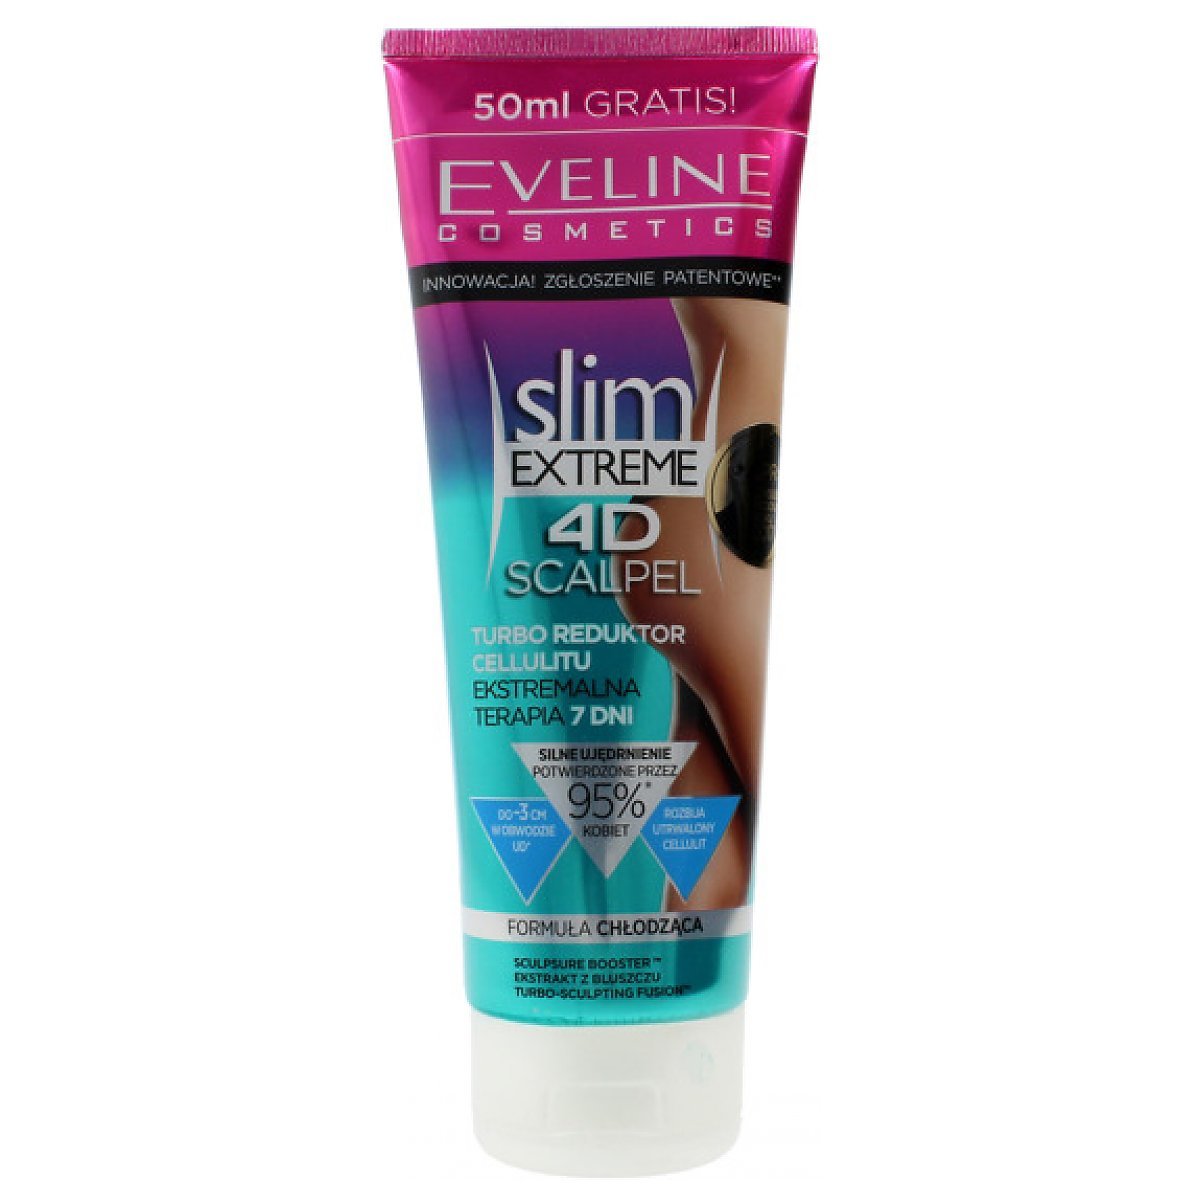 Eveline Slim Extreme 4d Scalpel Reduktor Cellulitu Formuła Chłodząca 250ml Perfumeria Dolce Pl